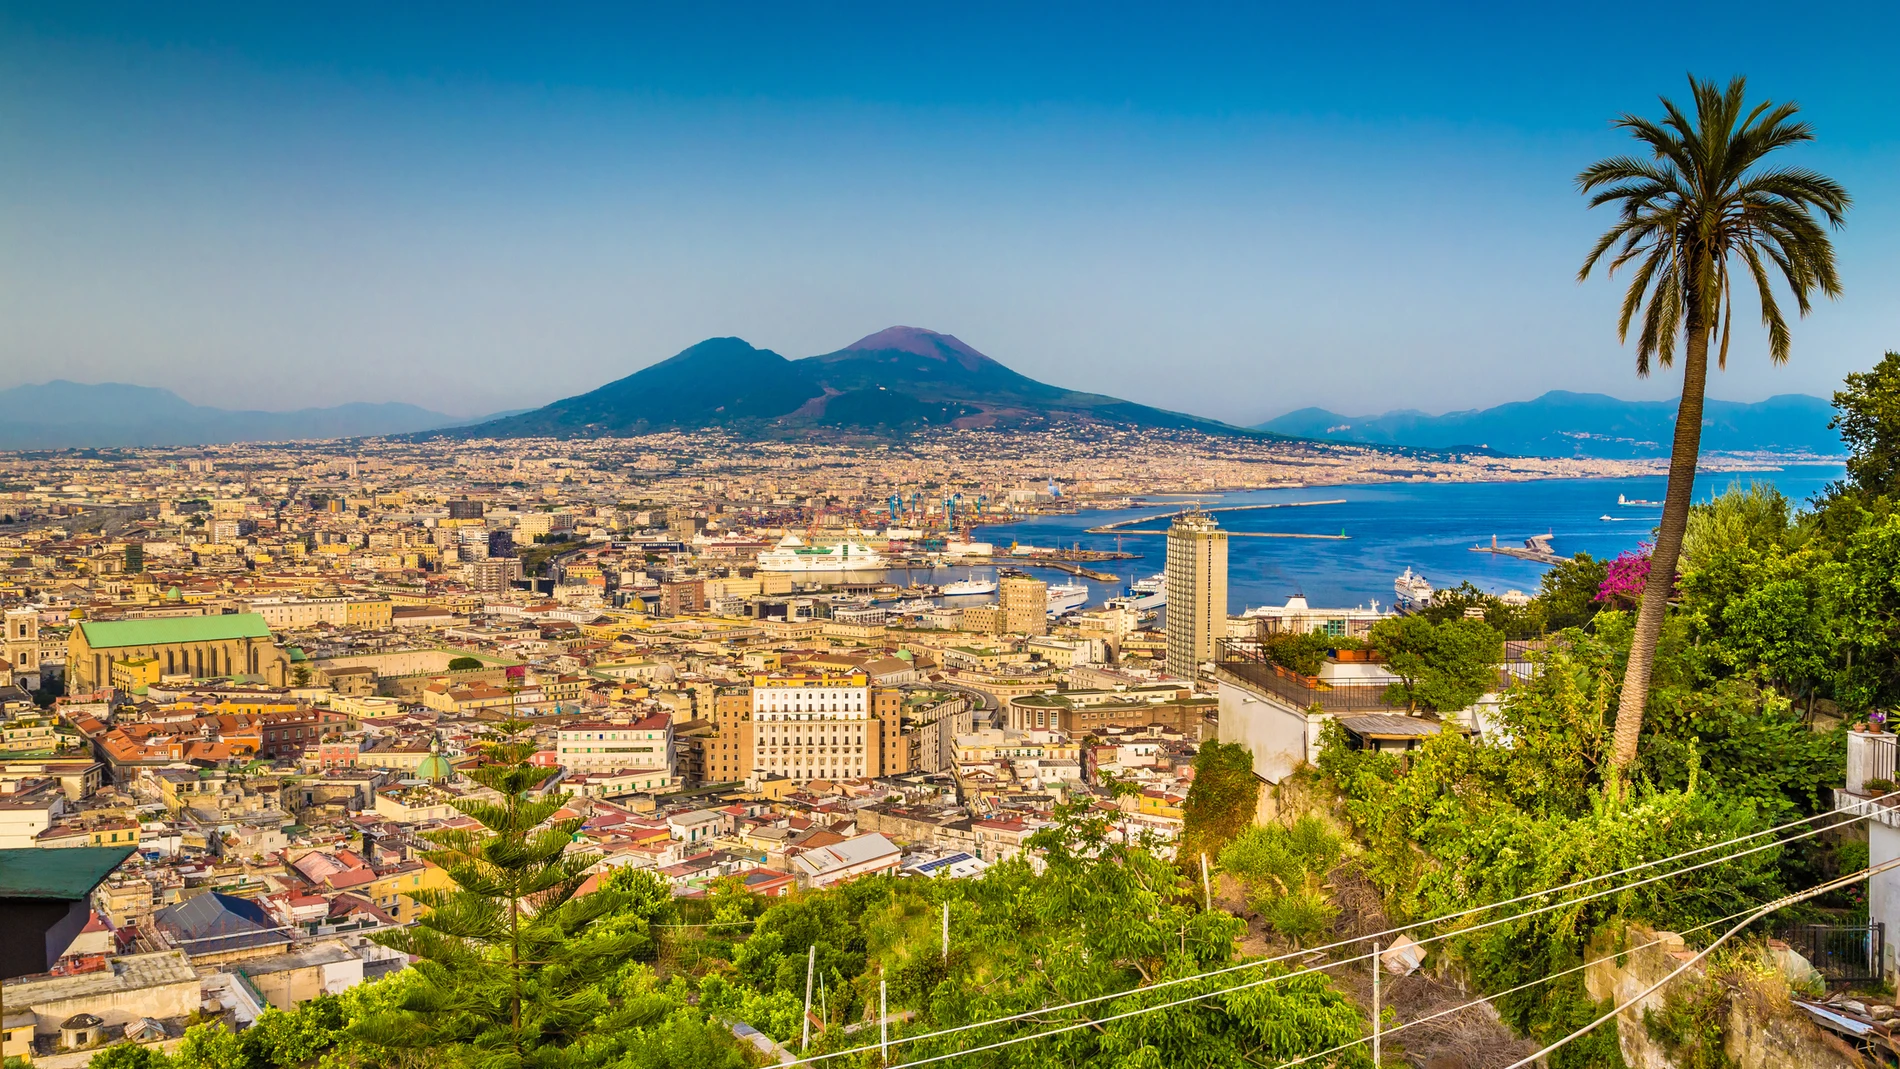 Vista aérea de la ciudad de Nápoles, capital de la región de Campania, y el famoso monte Vesubio al fondo